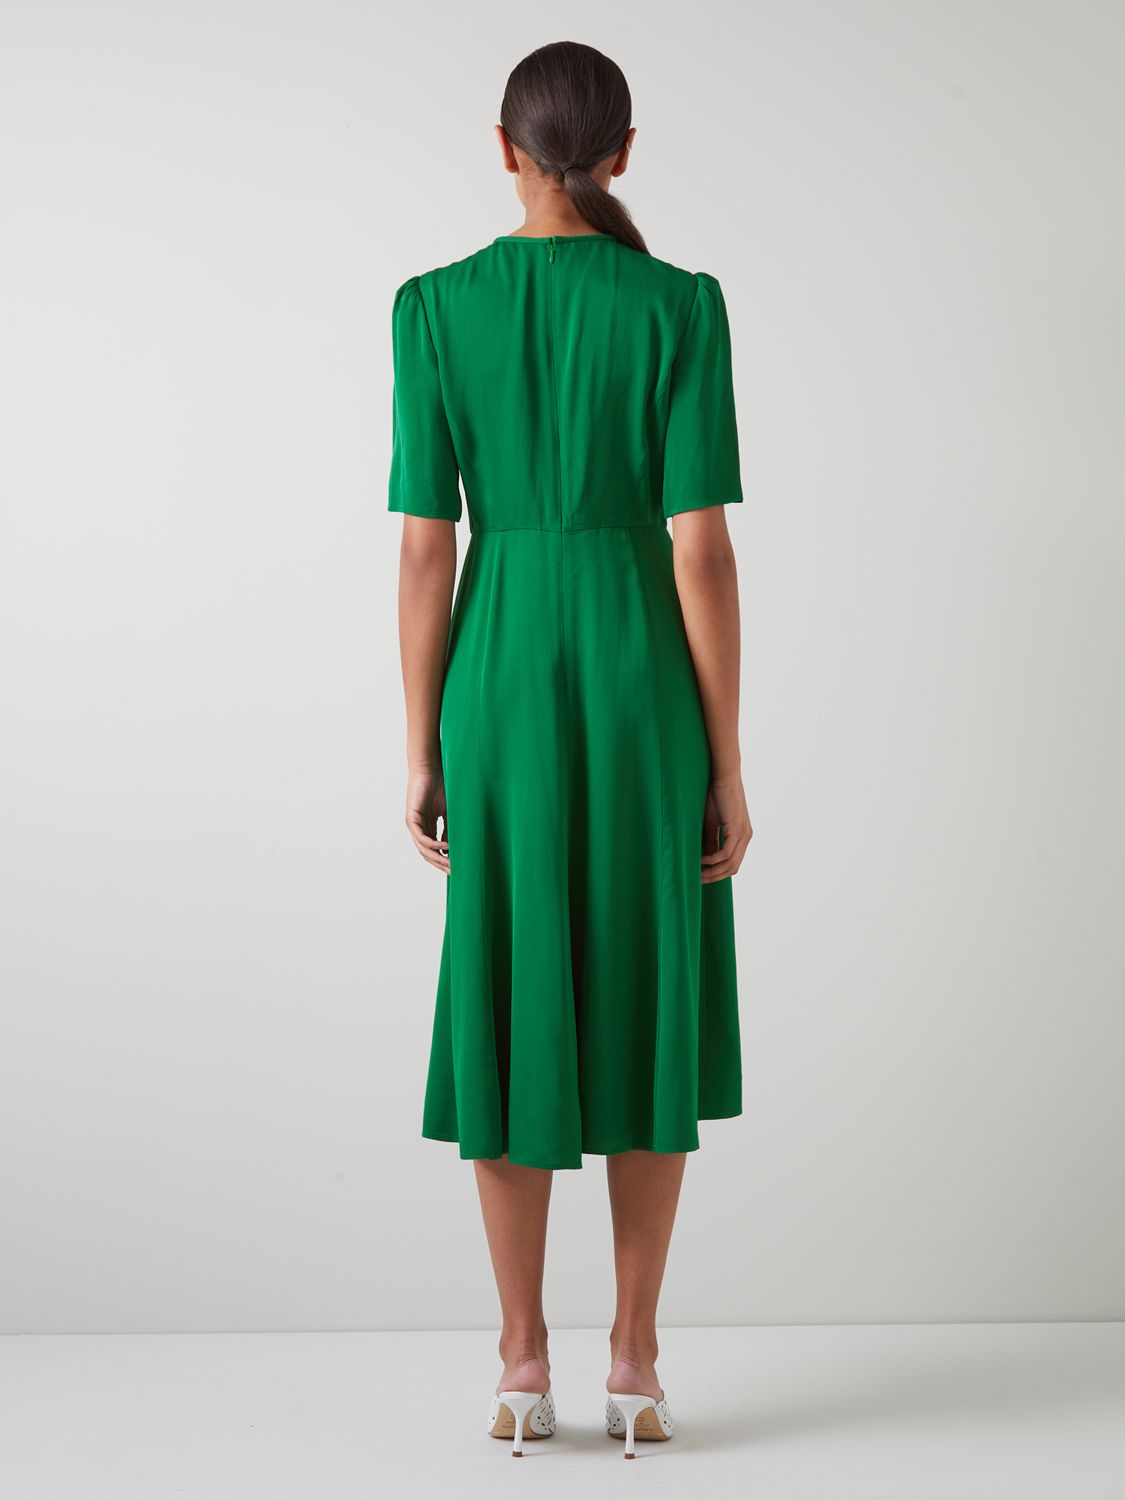 L.K.Bennett Montana Satin Crepe Dress, Green, 4